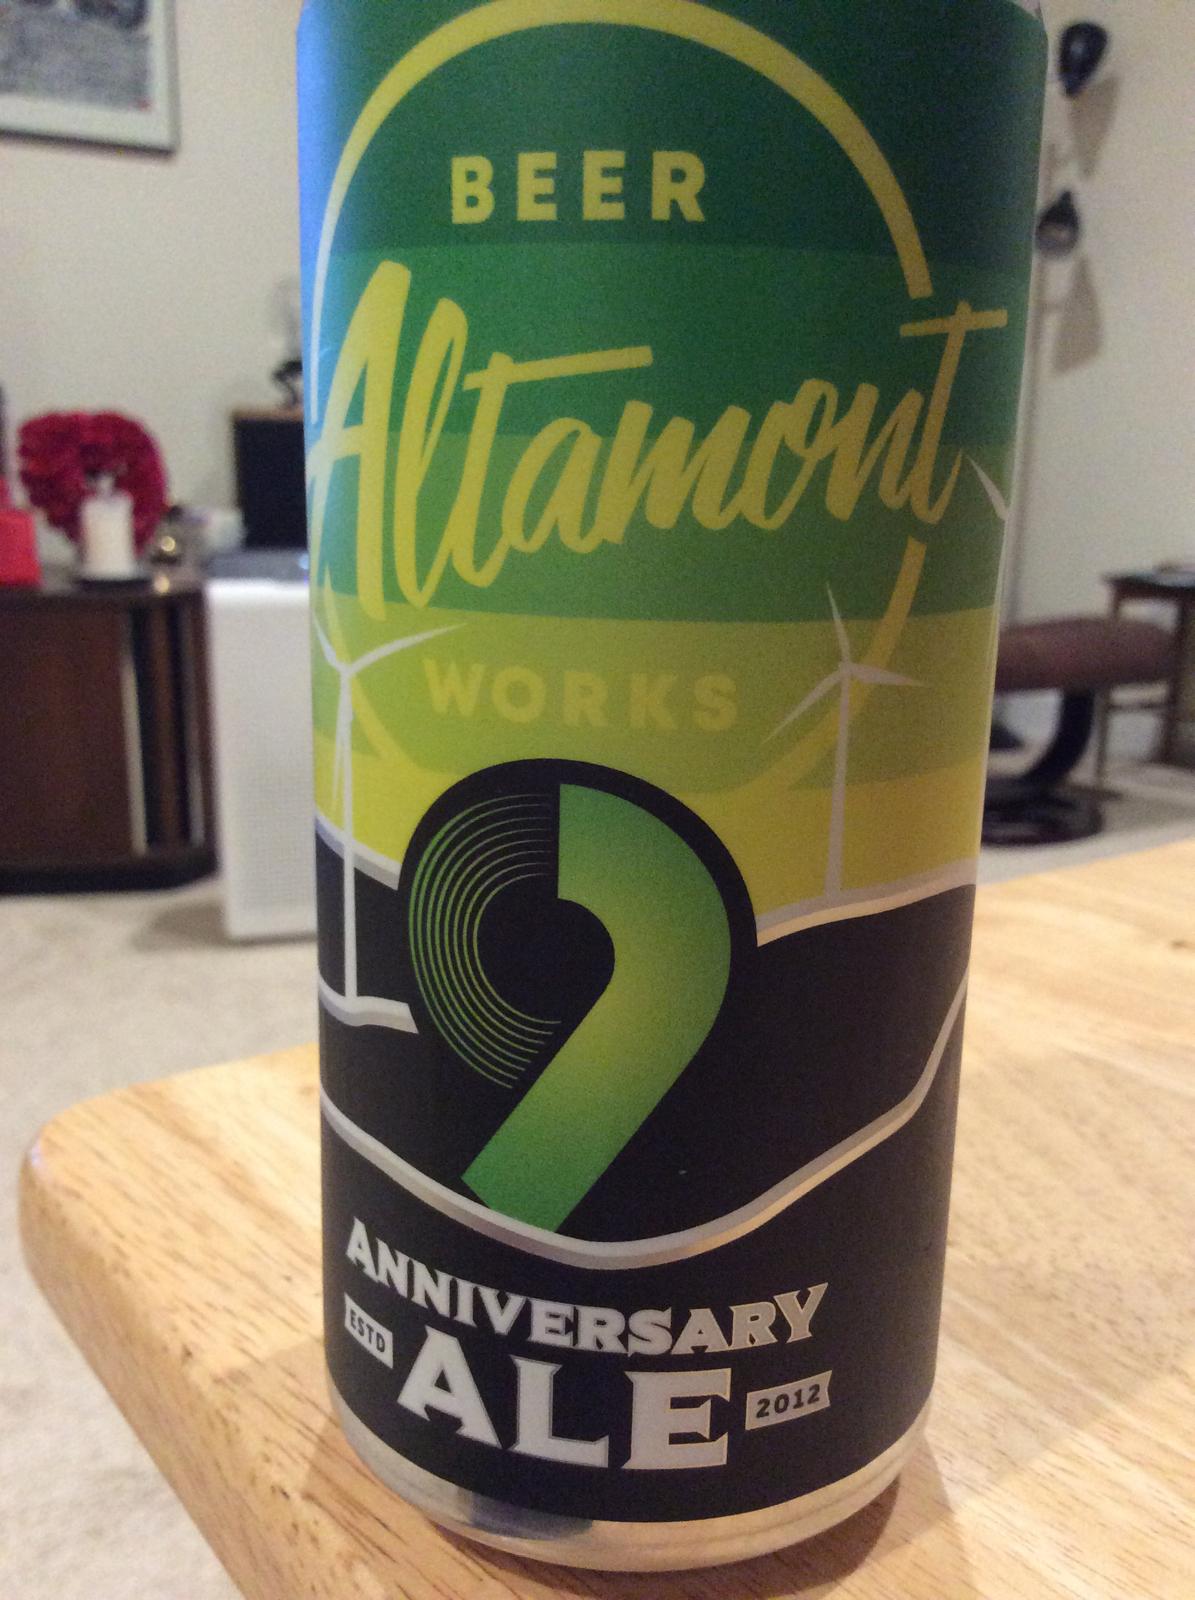 9th Anniversary Ale